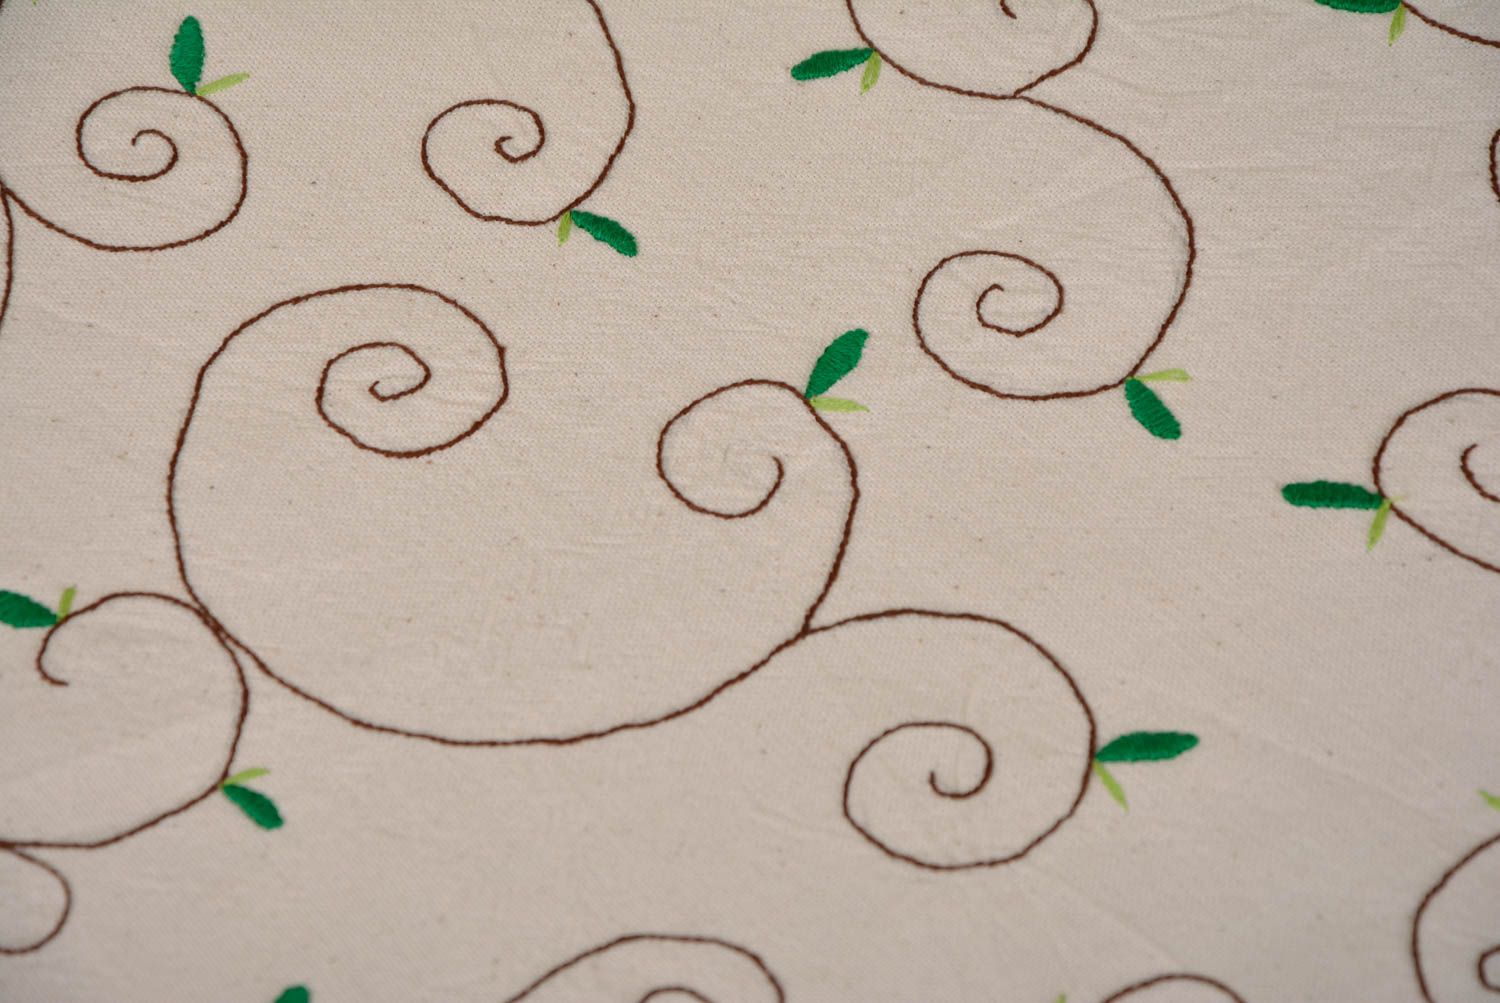 Textil Tischdecke mit Stickerei aus Halbleinen schön originell handmade foto 3